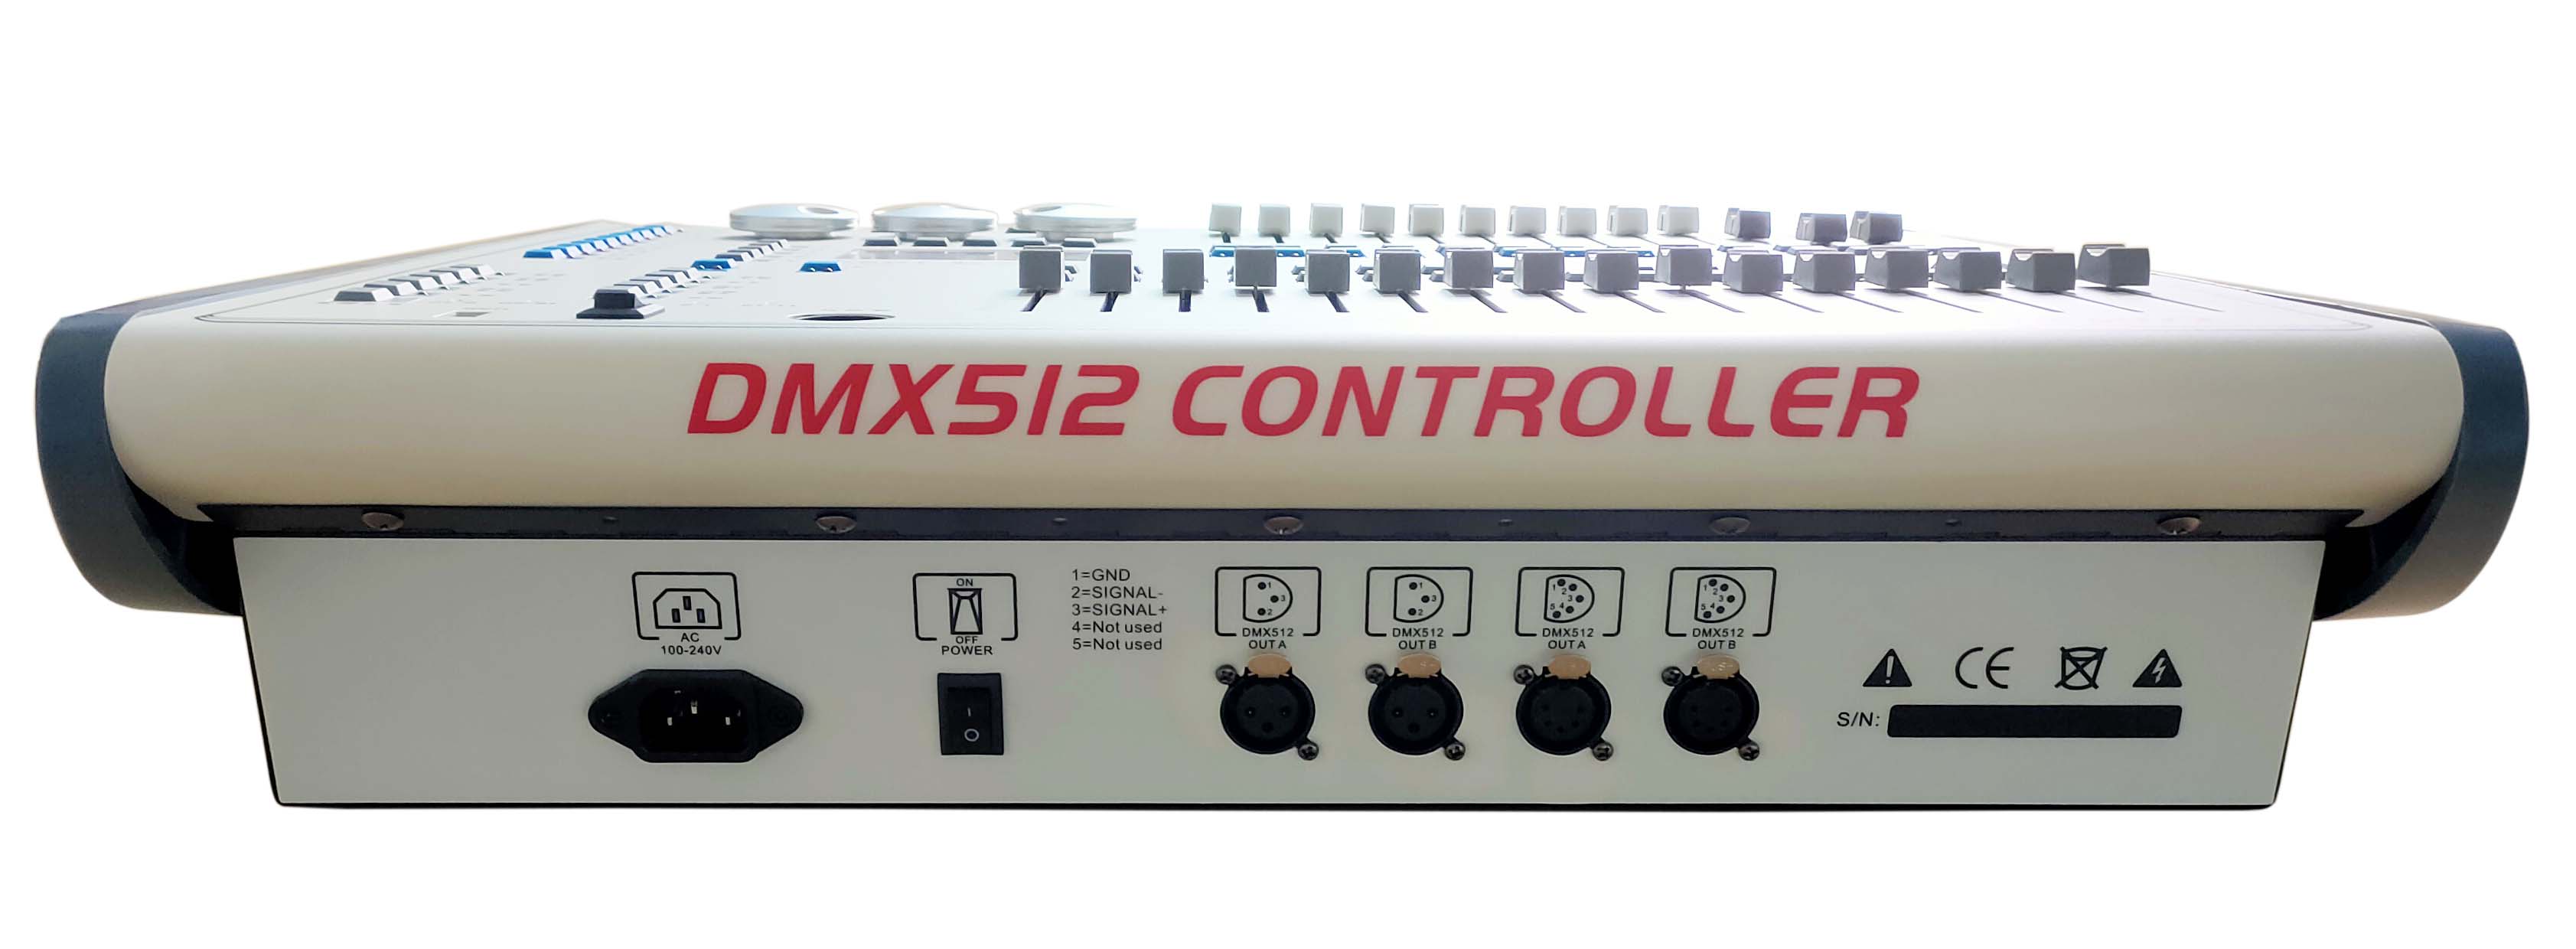  DMX-512 パール 1024 チャンネル コントローラー FD-KA1024